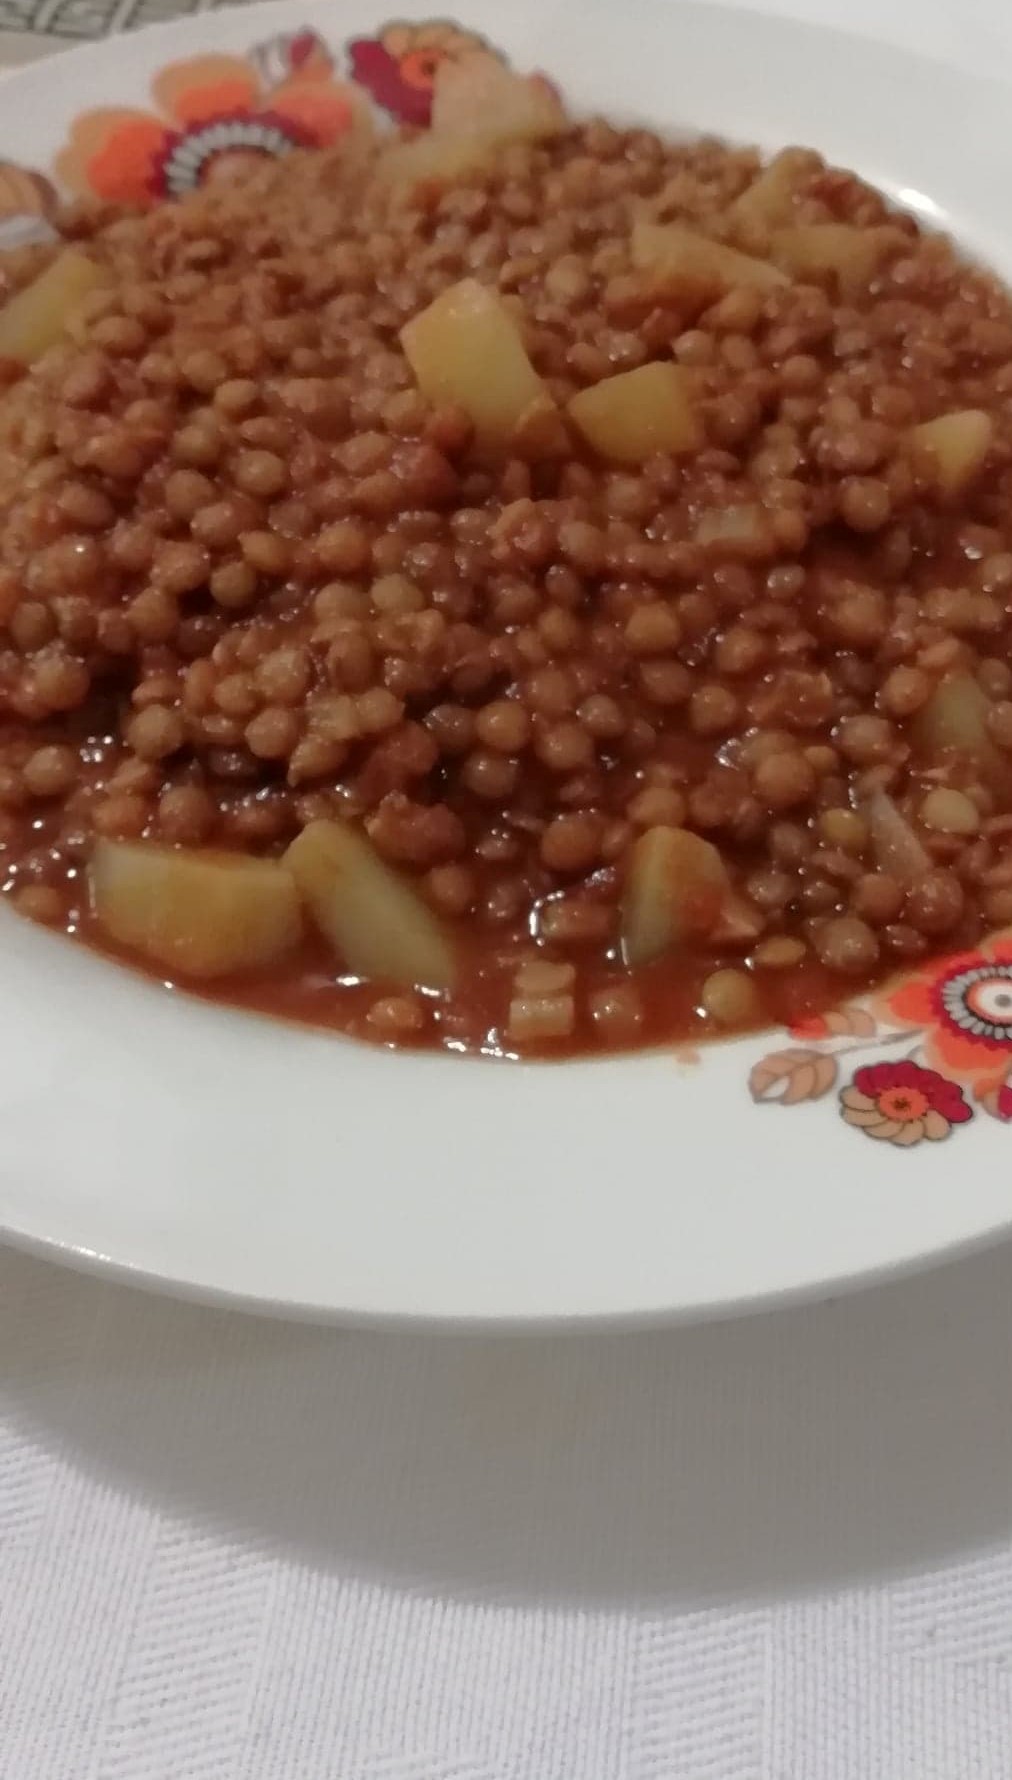 Zuppa di lenticchie con patate